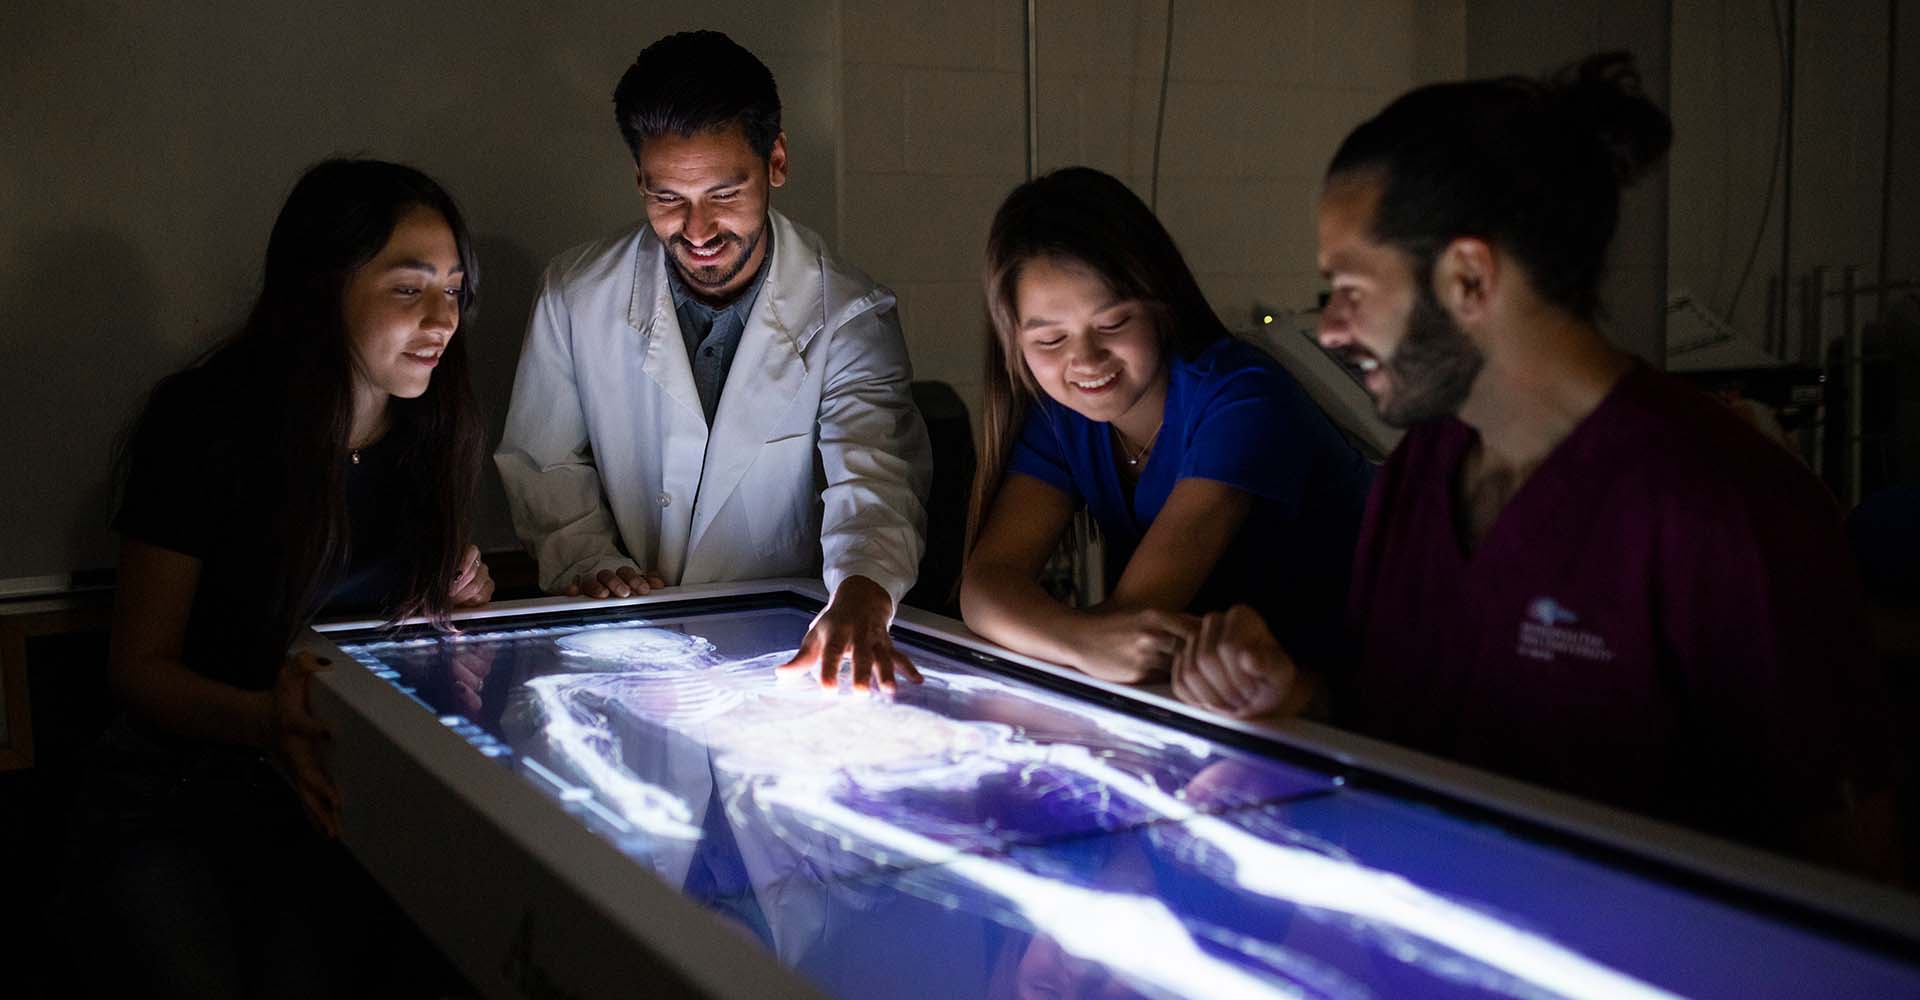 Health students examining an x-ray